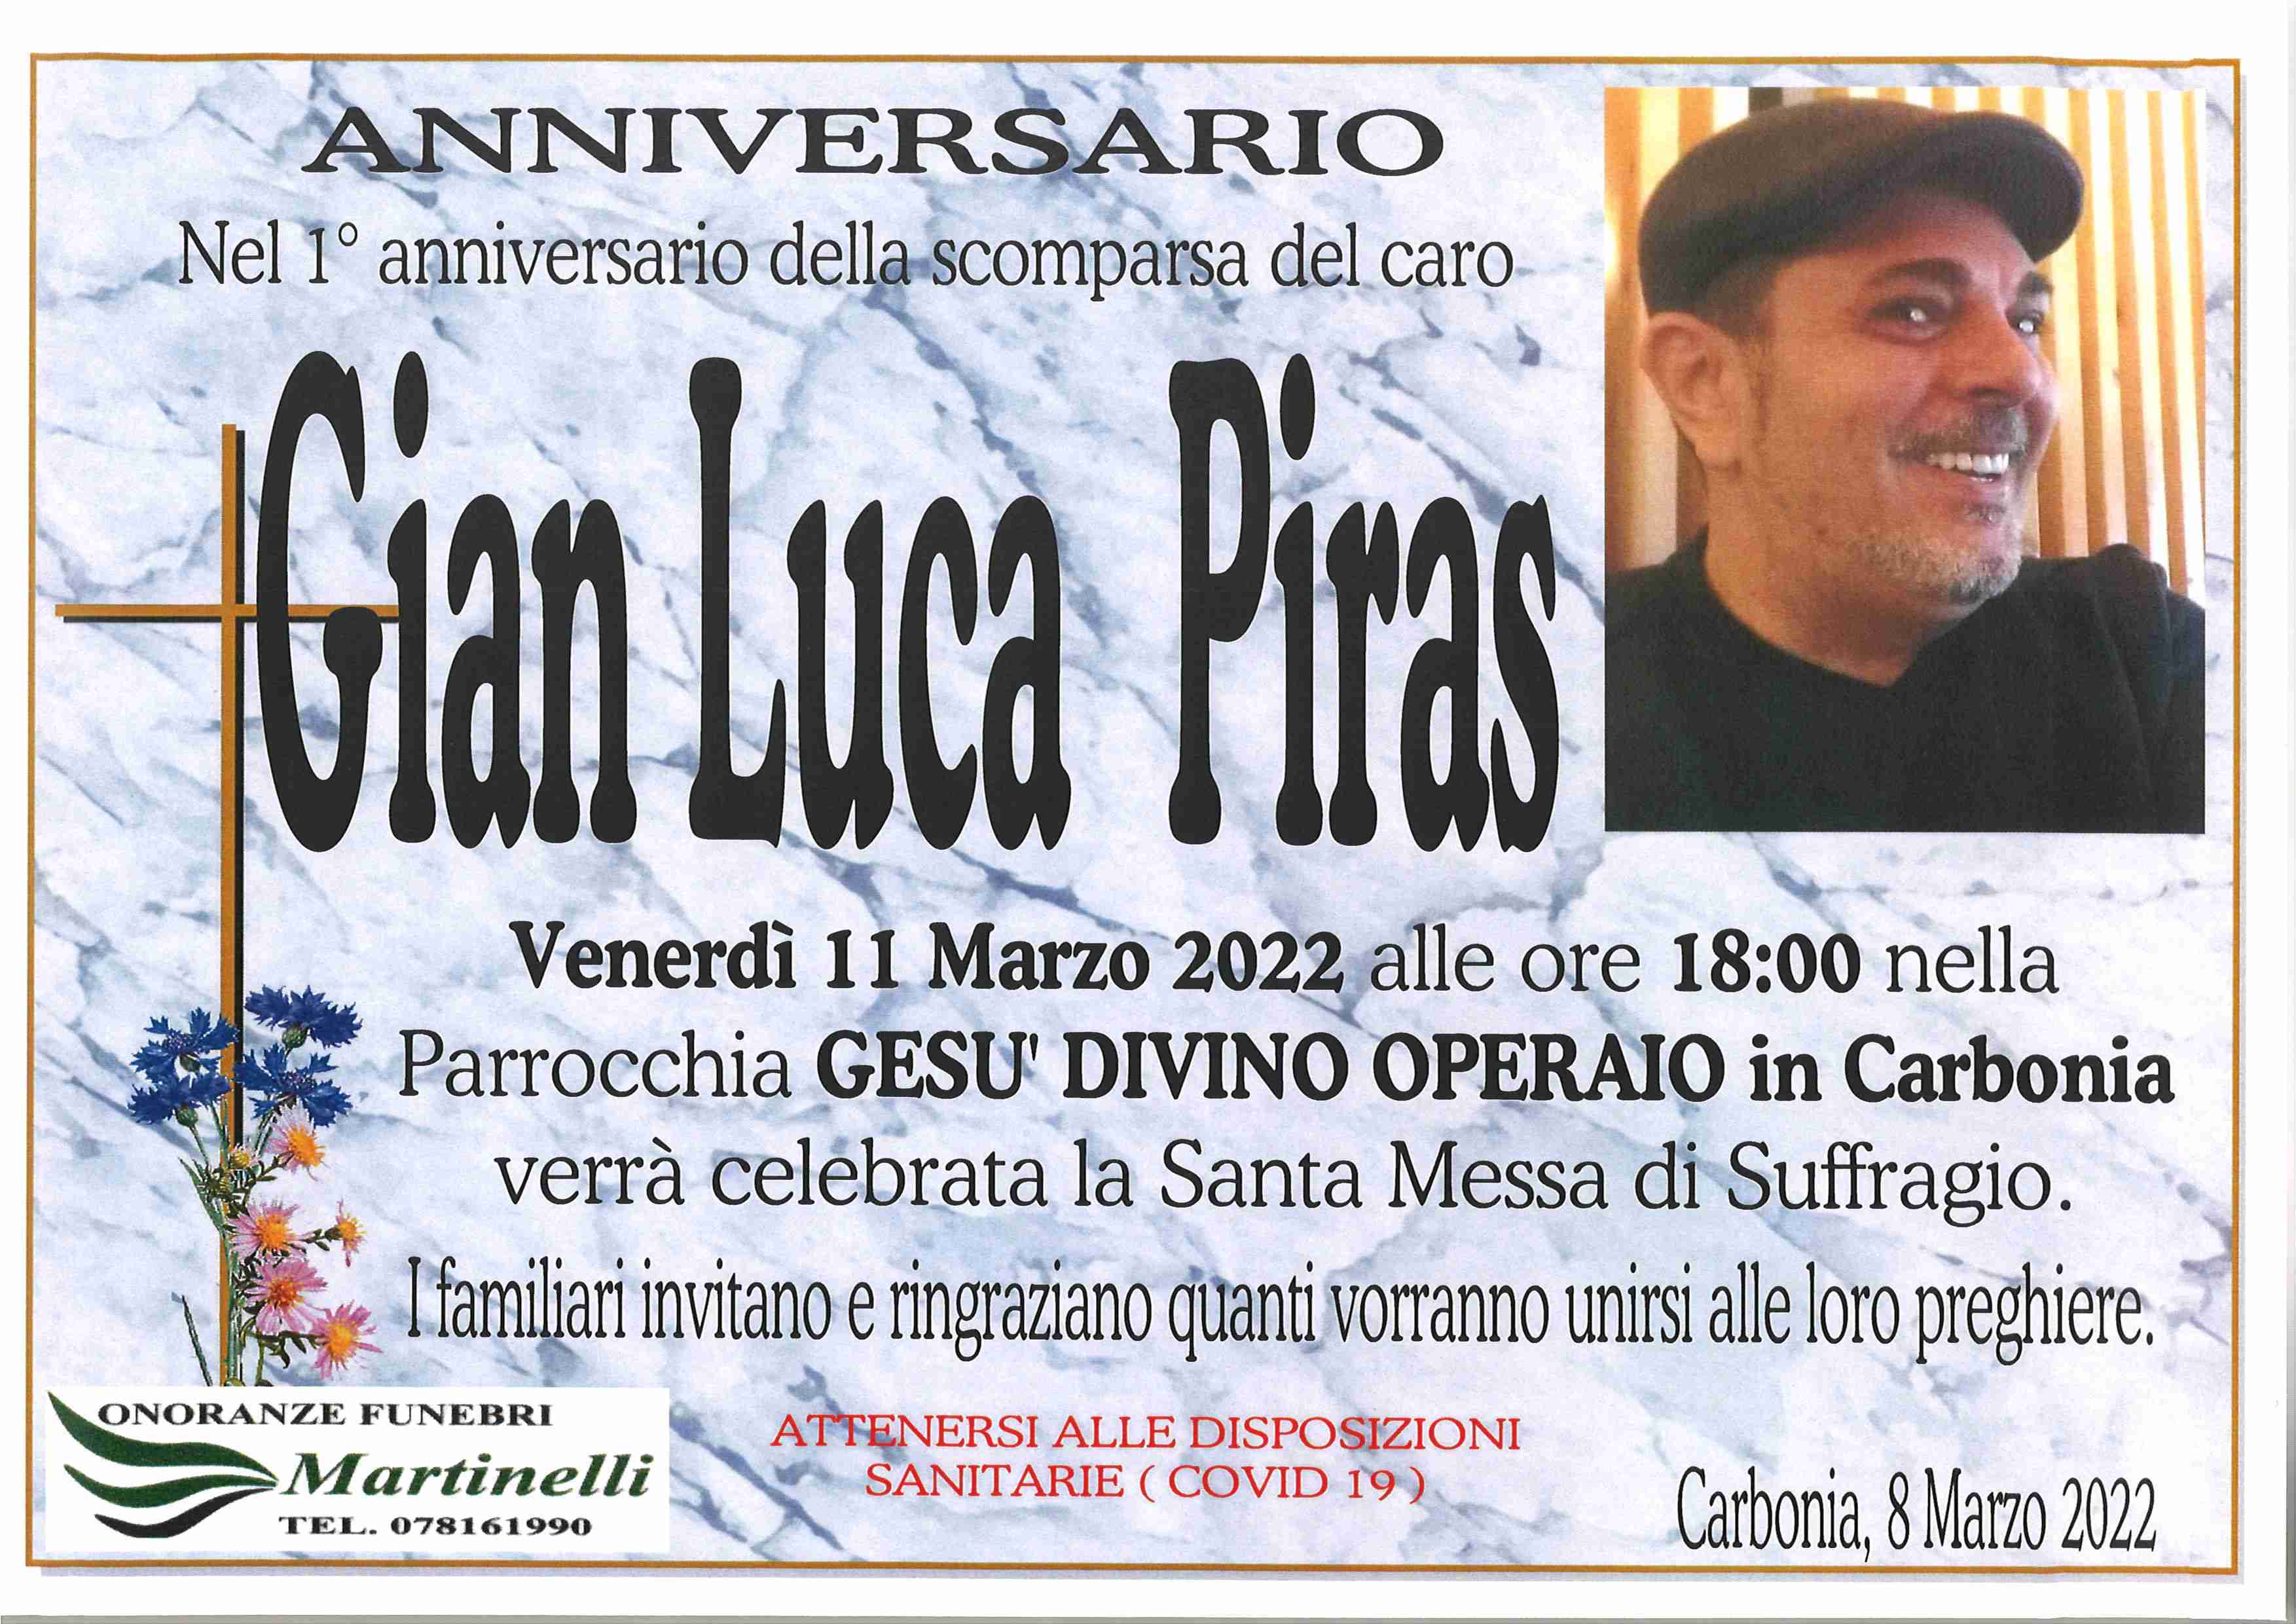 Gian Luca Piras